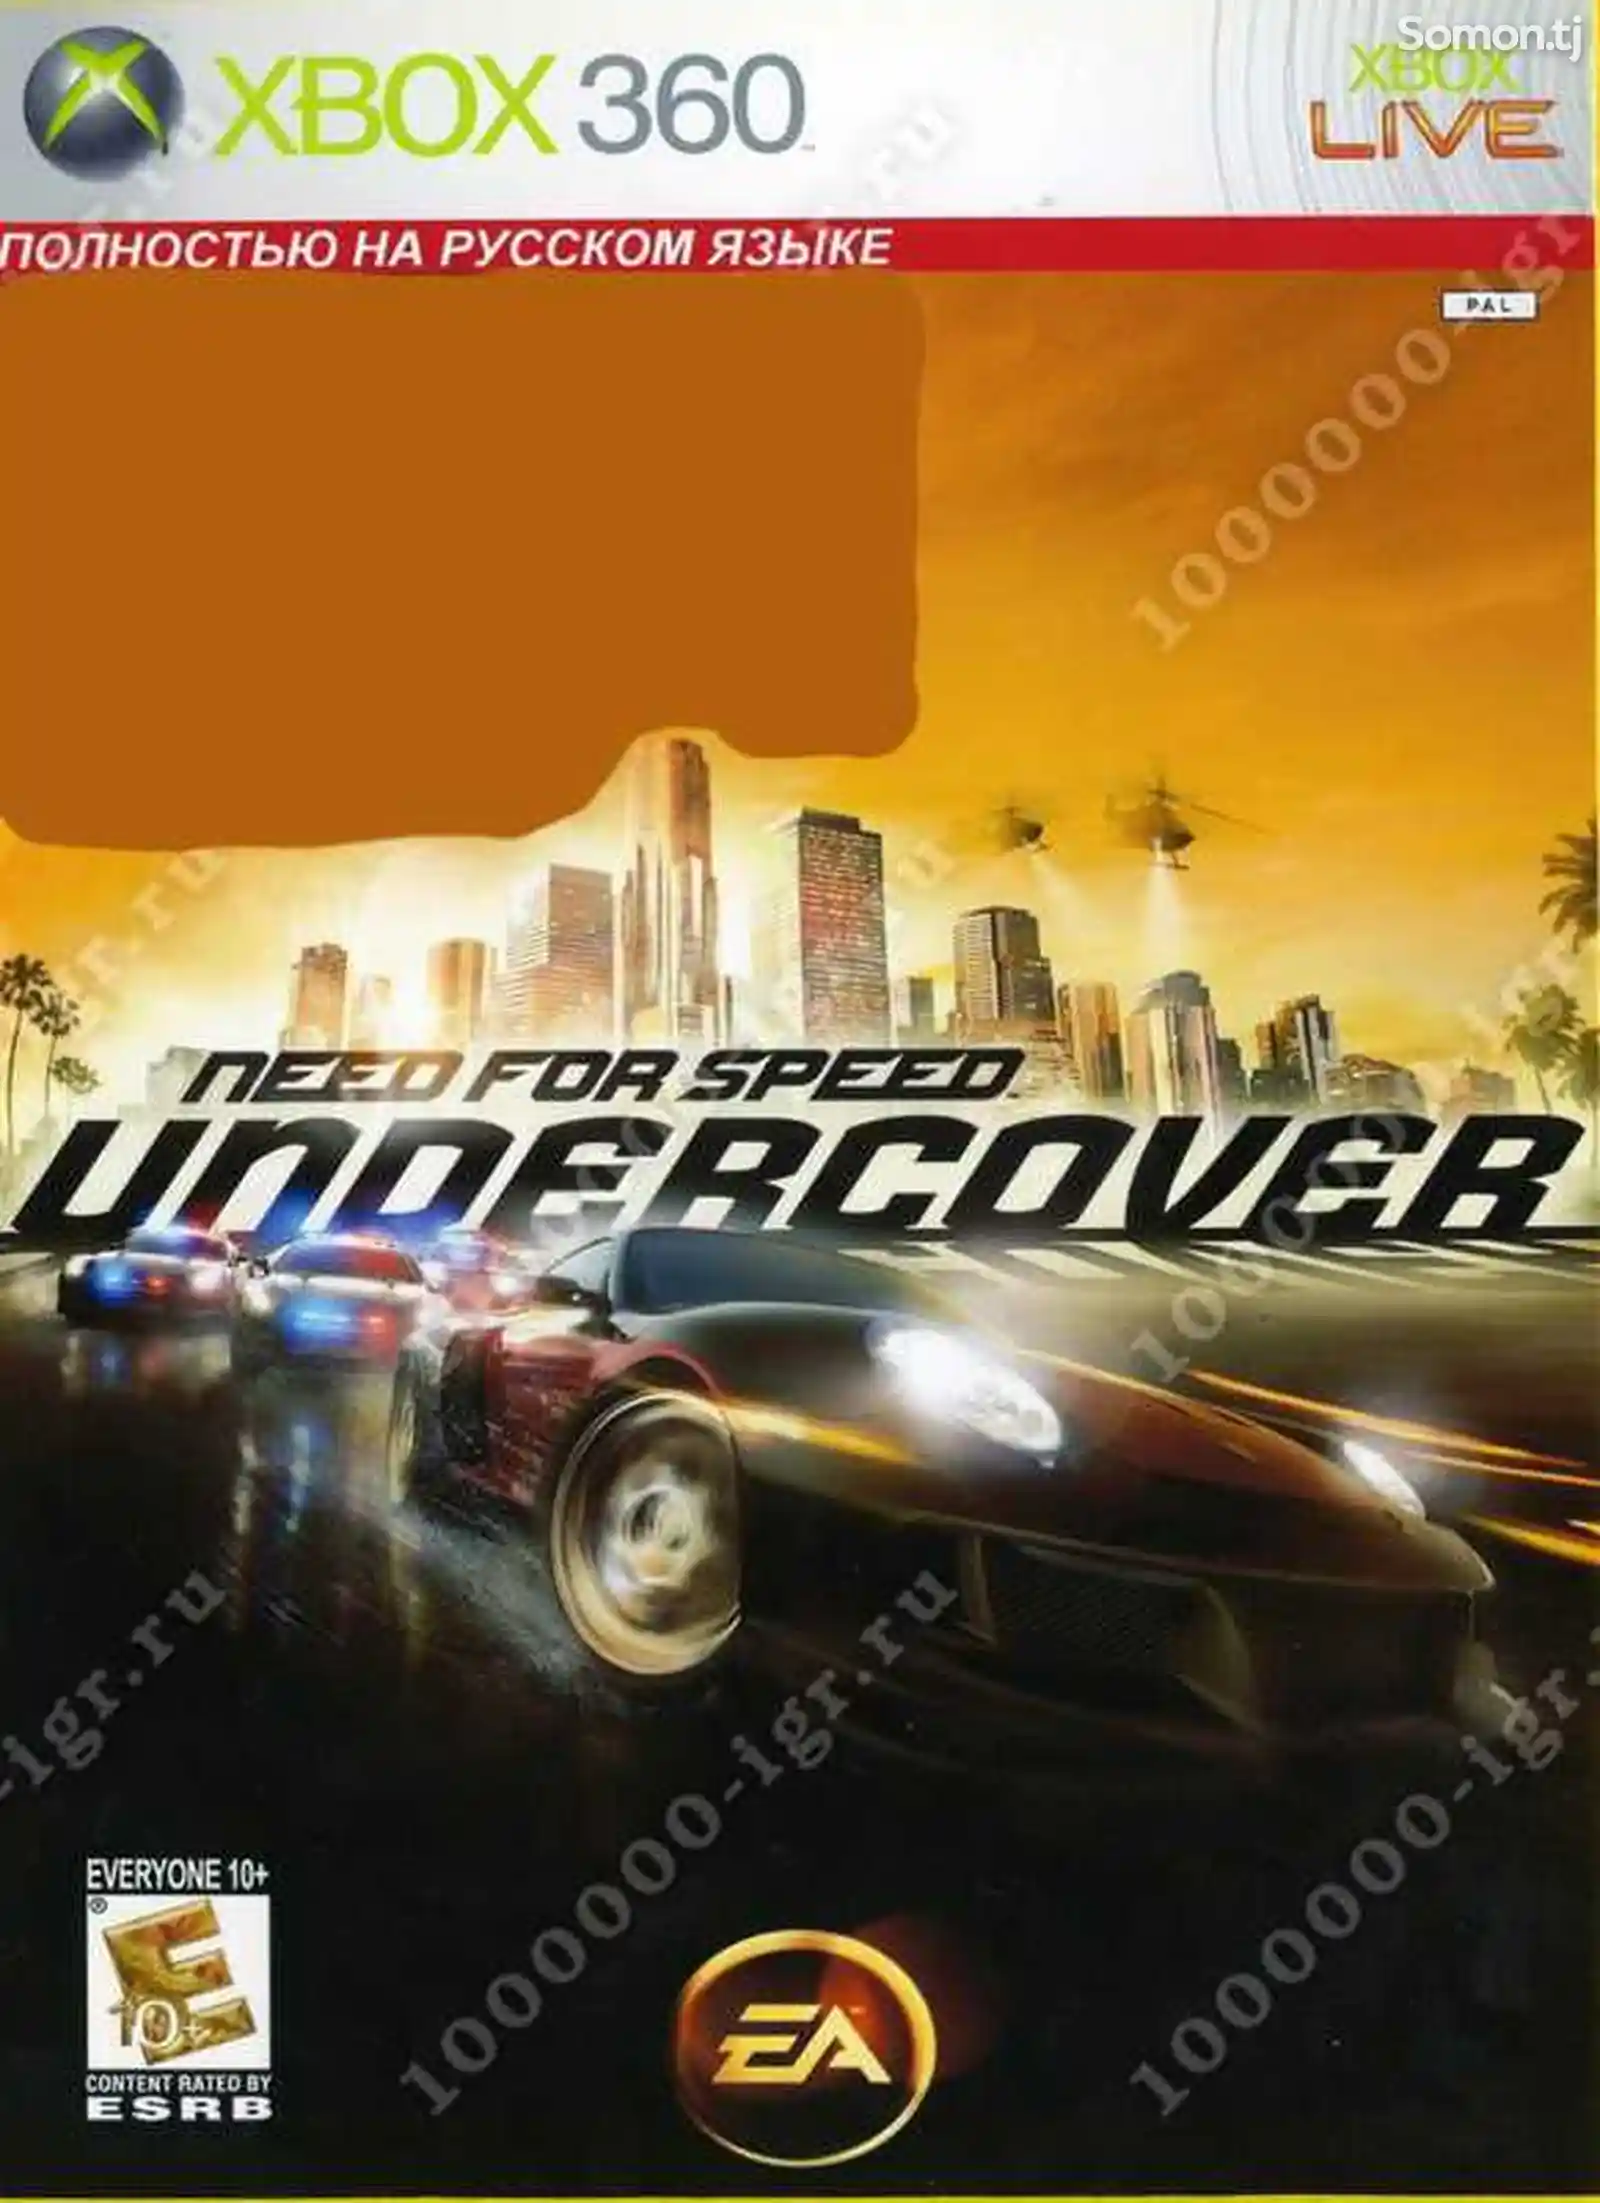 Игра Nfs undercover для прошитых Xbox 360